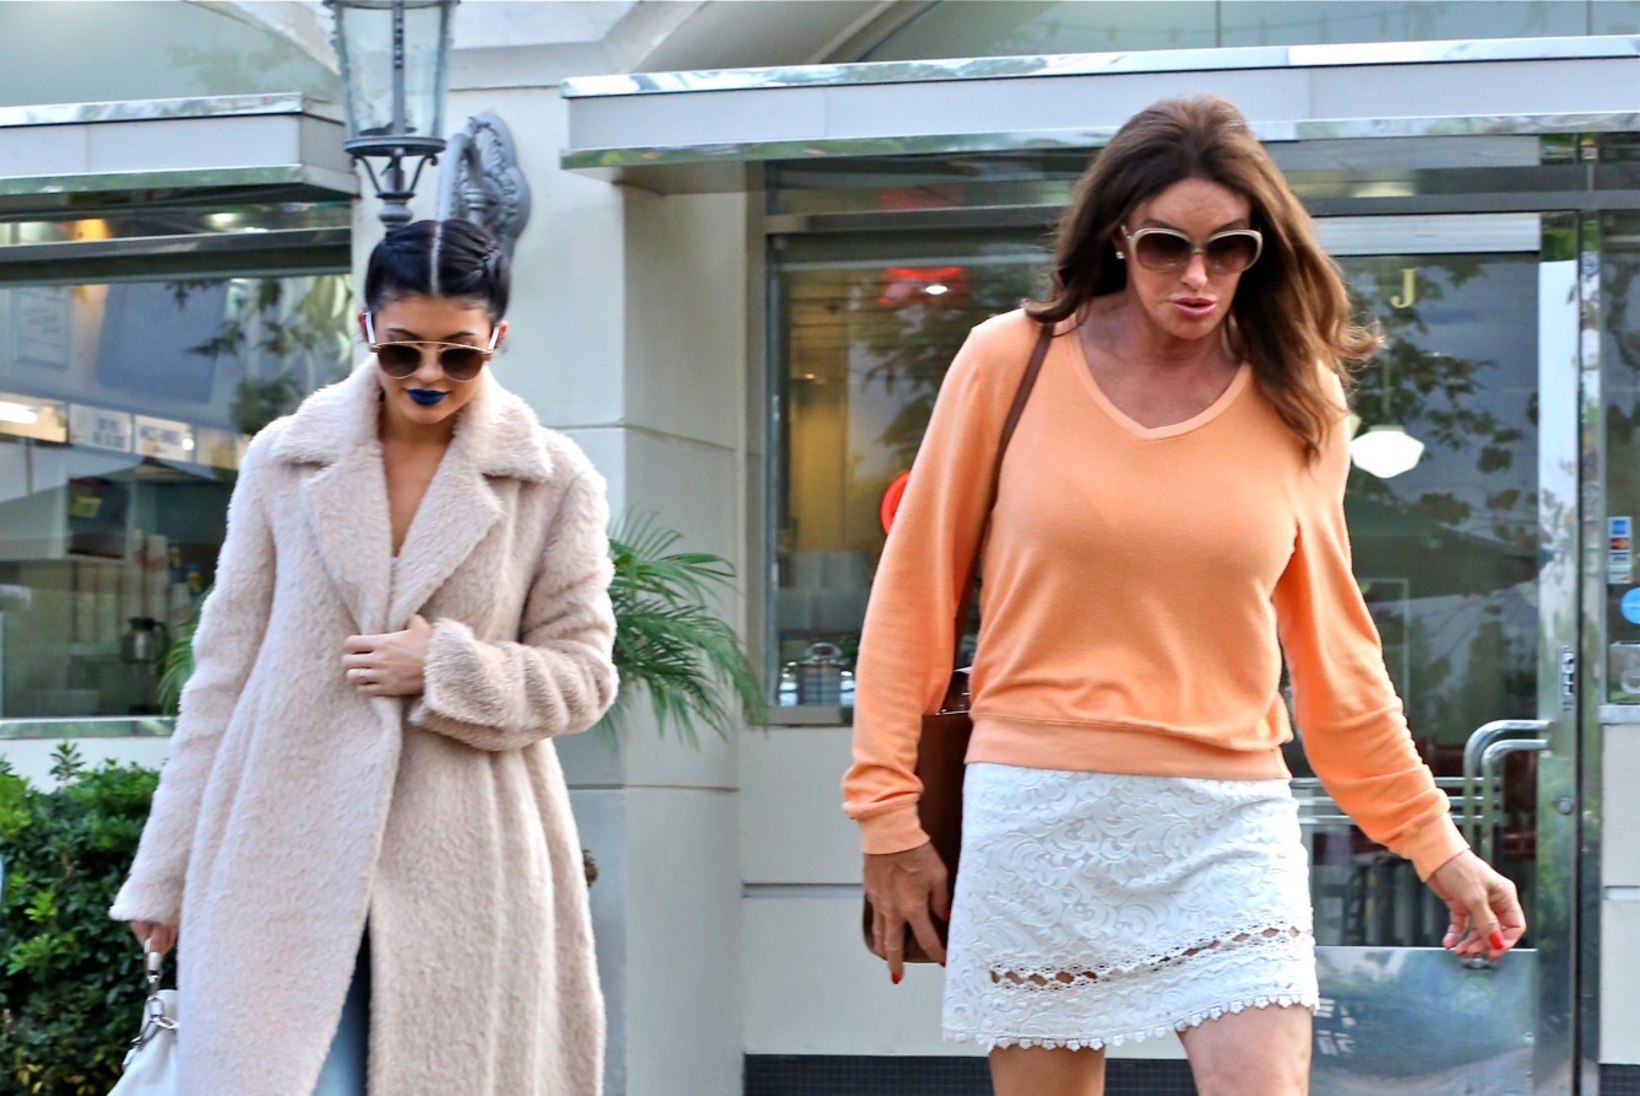 FOTOD | NAISED KOOS: Caitlyn Jenner käis tütrega söömas ja poodlemas